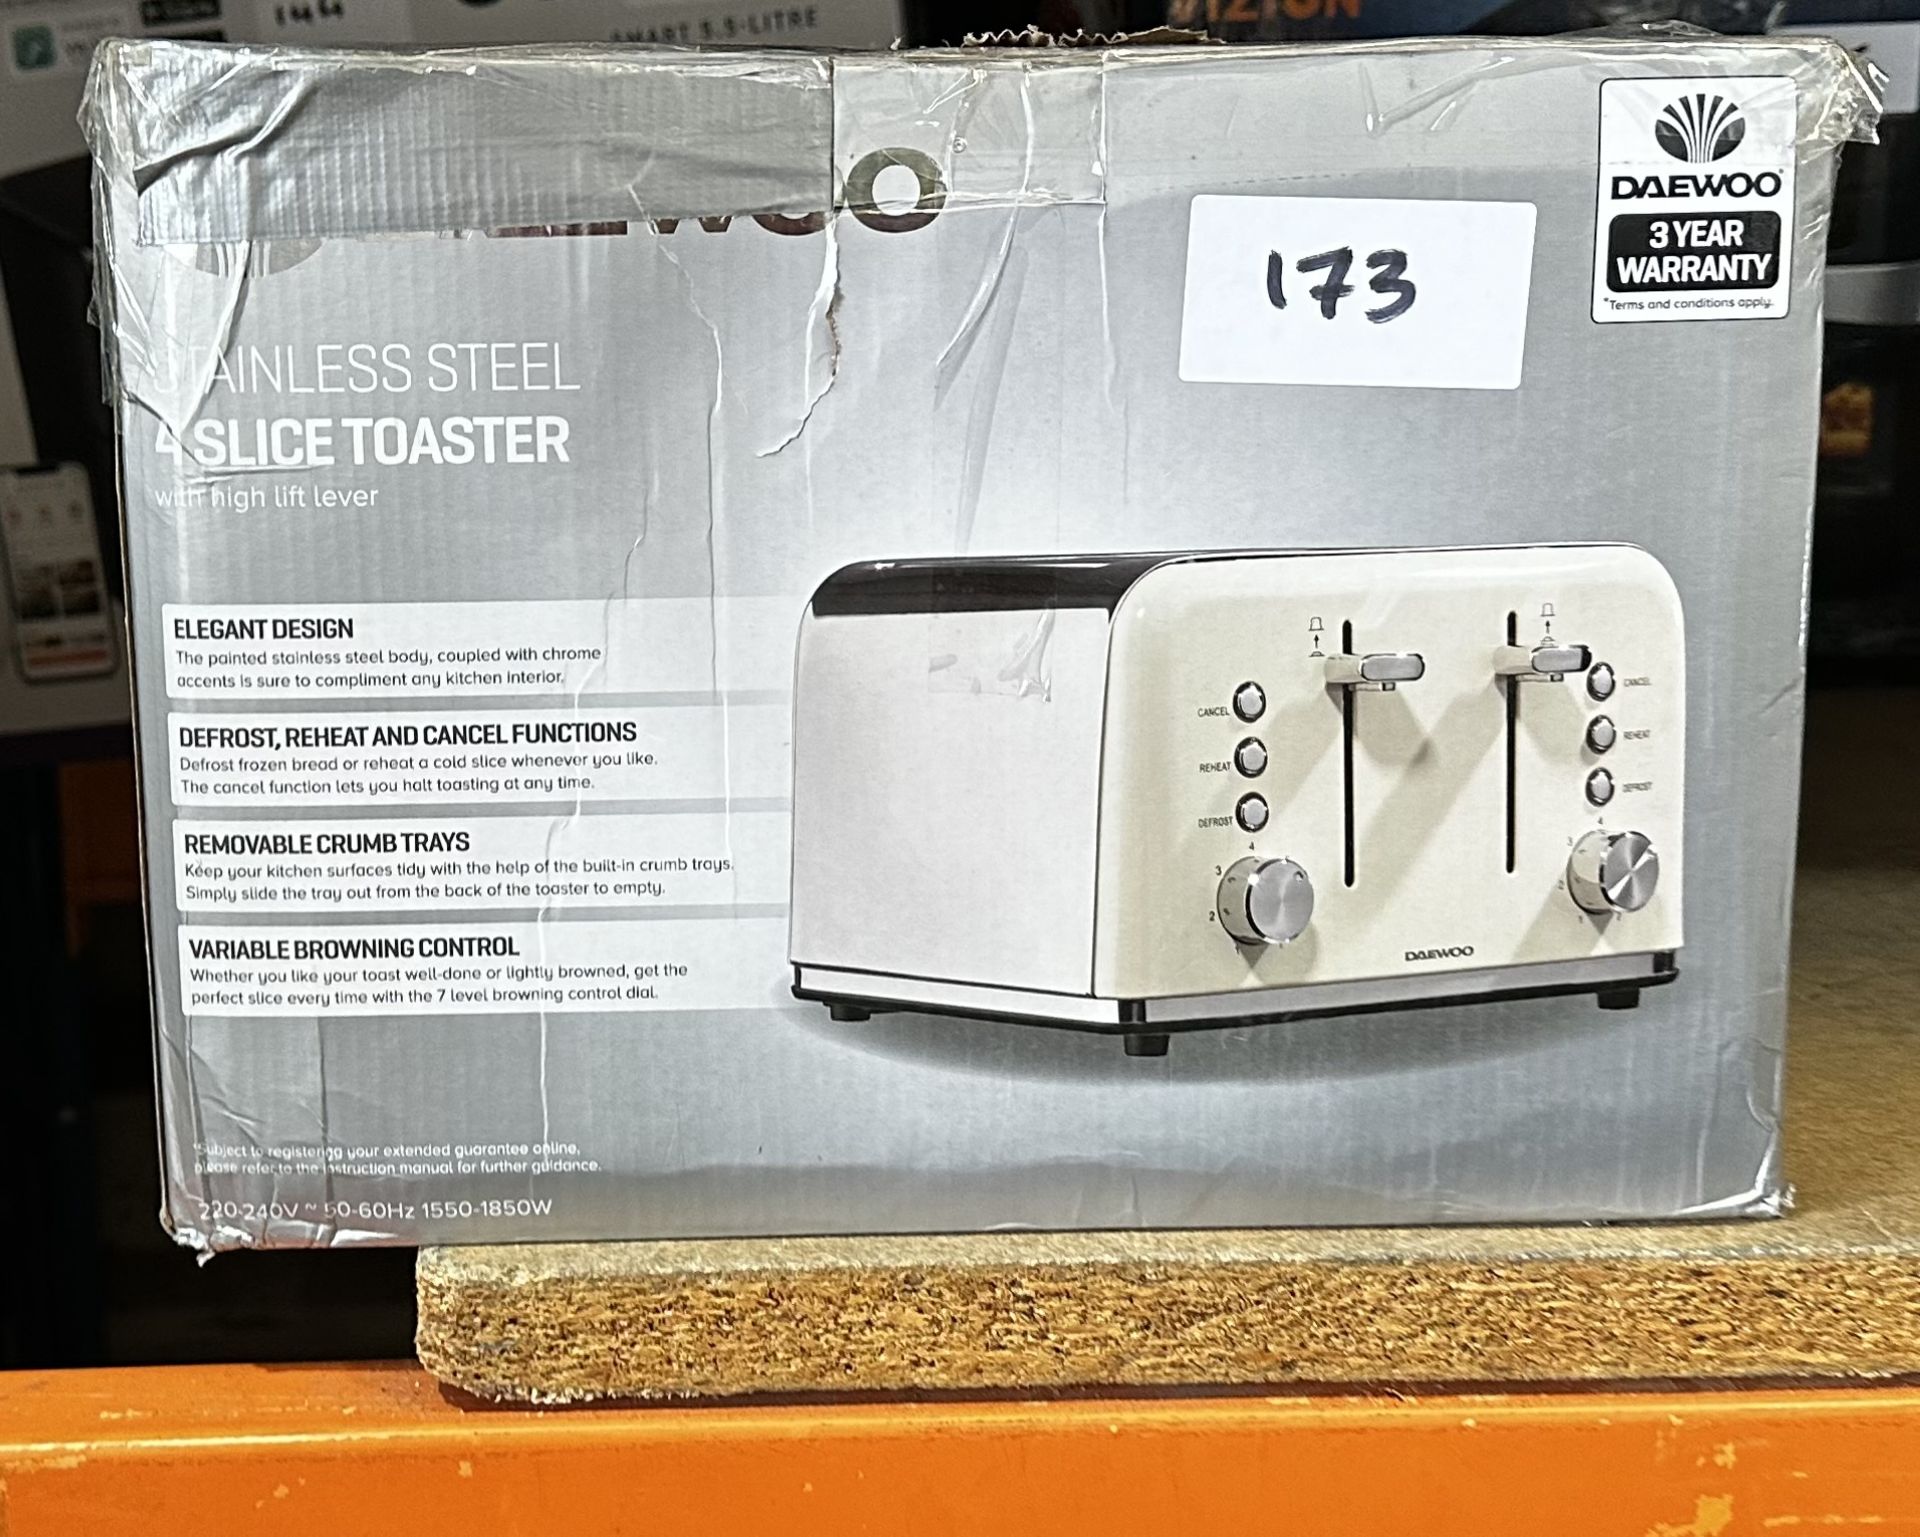 Daewoo Stainless Steel 4 Slice Toaster. RRP £50 - GRADE U